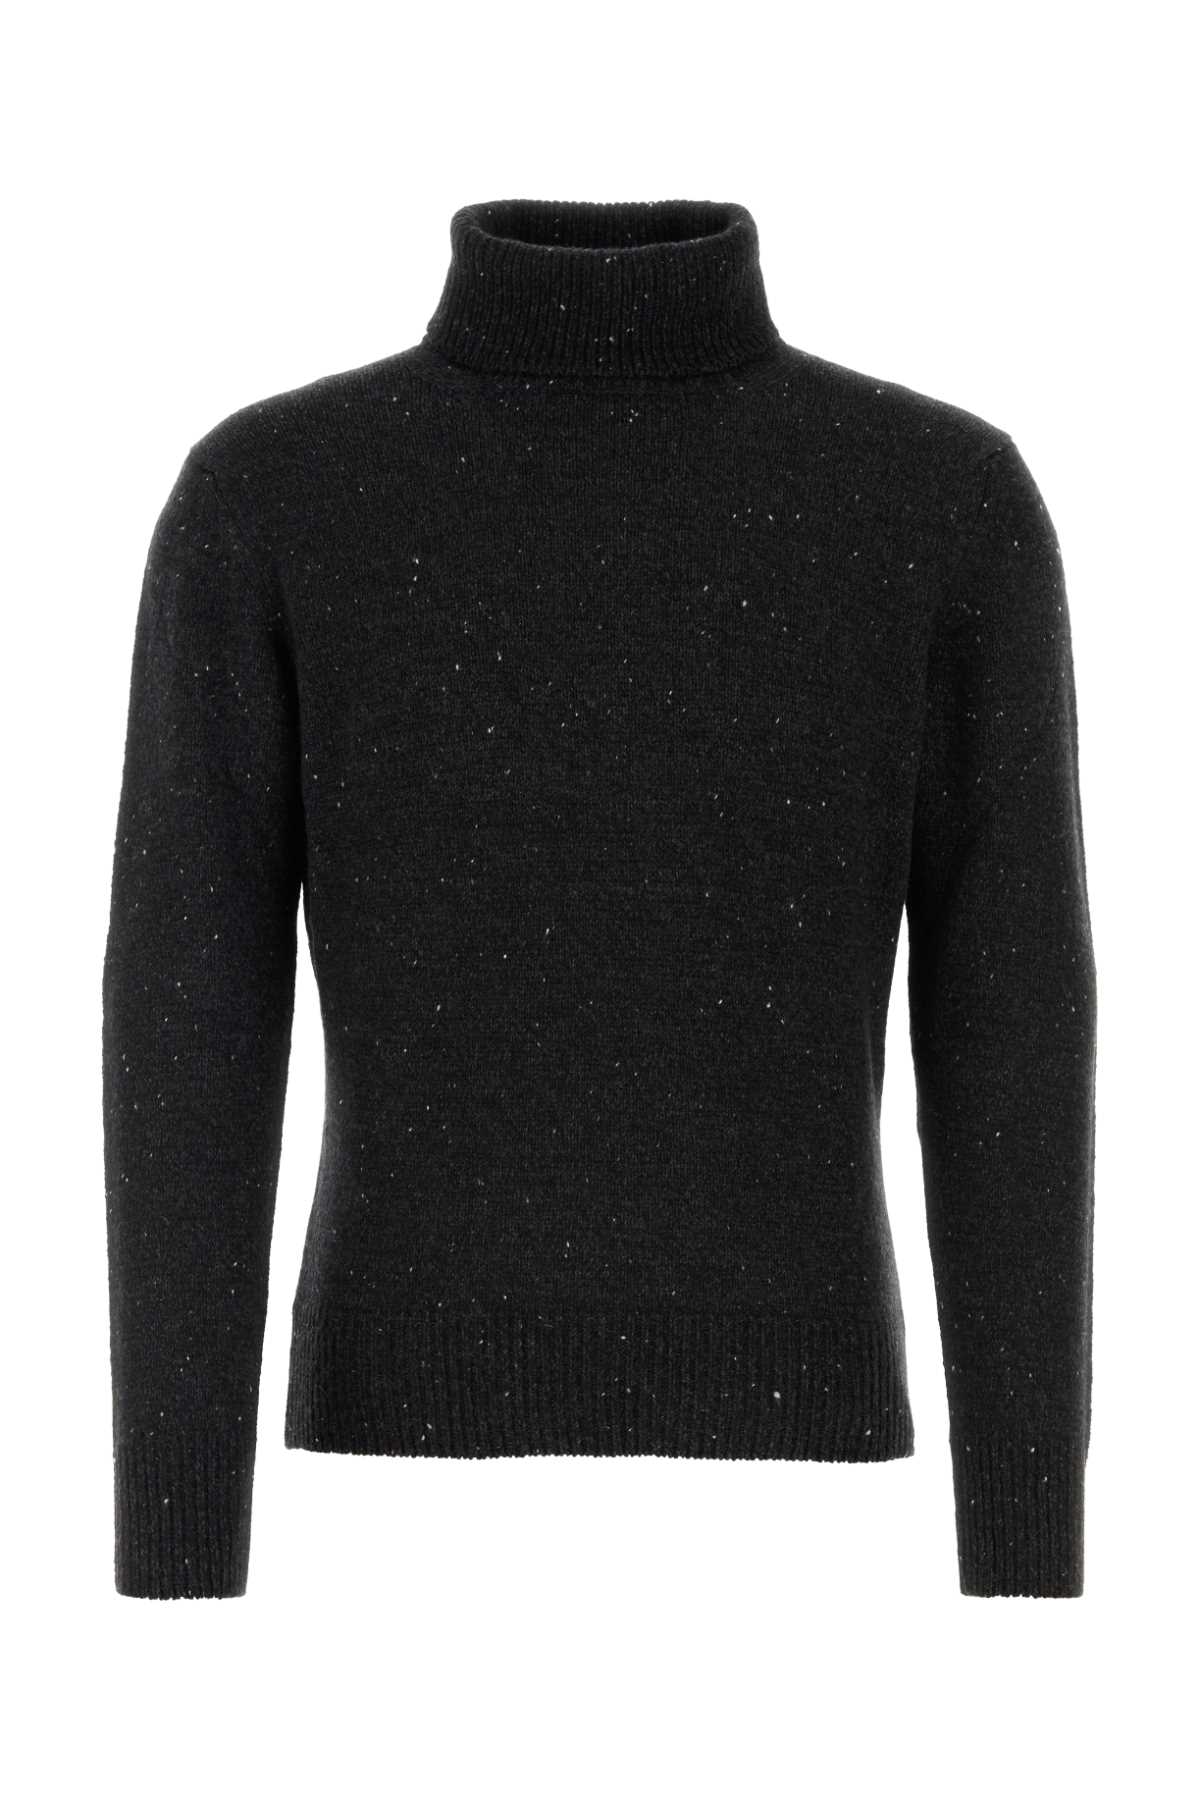 Dark Grey Cashmere Sweater